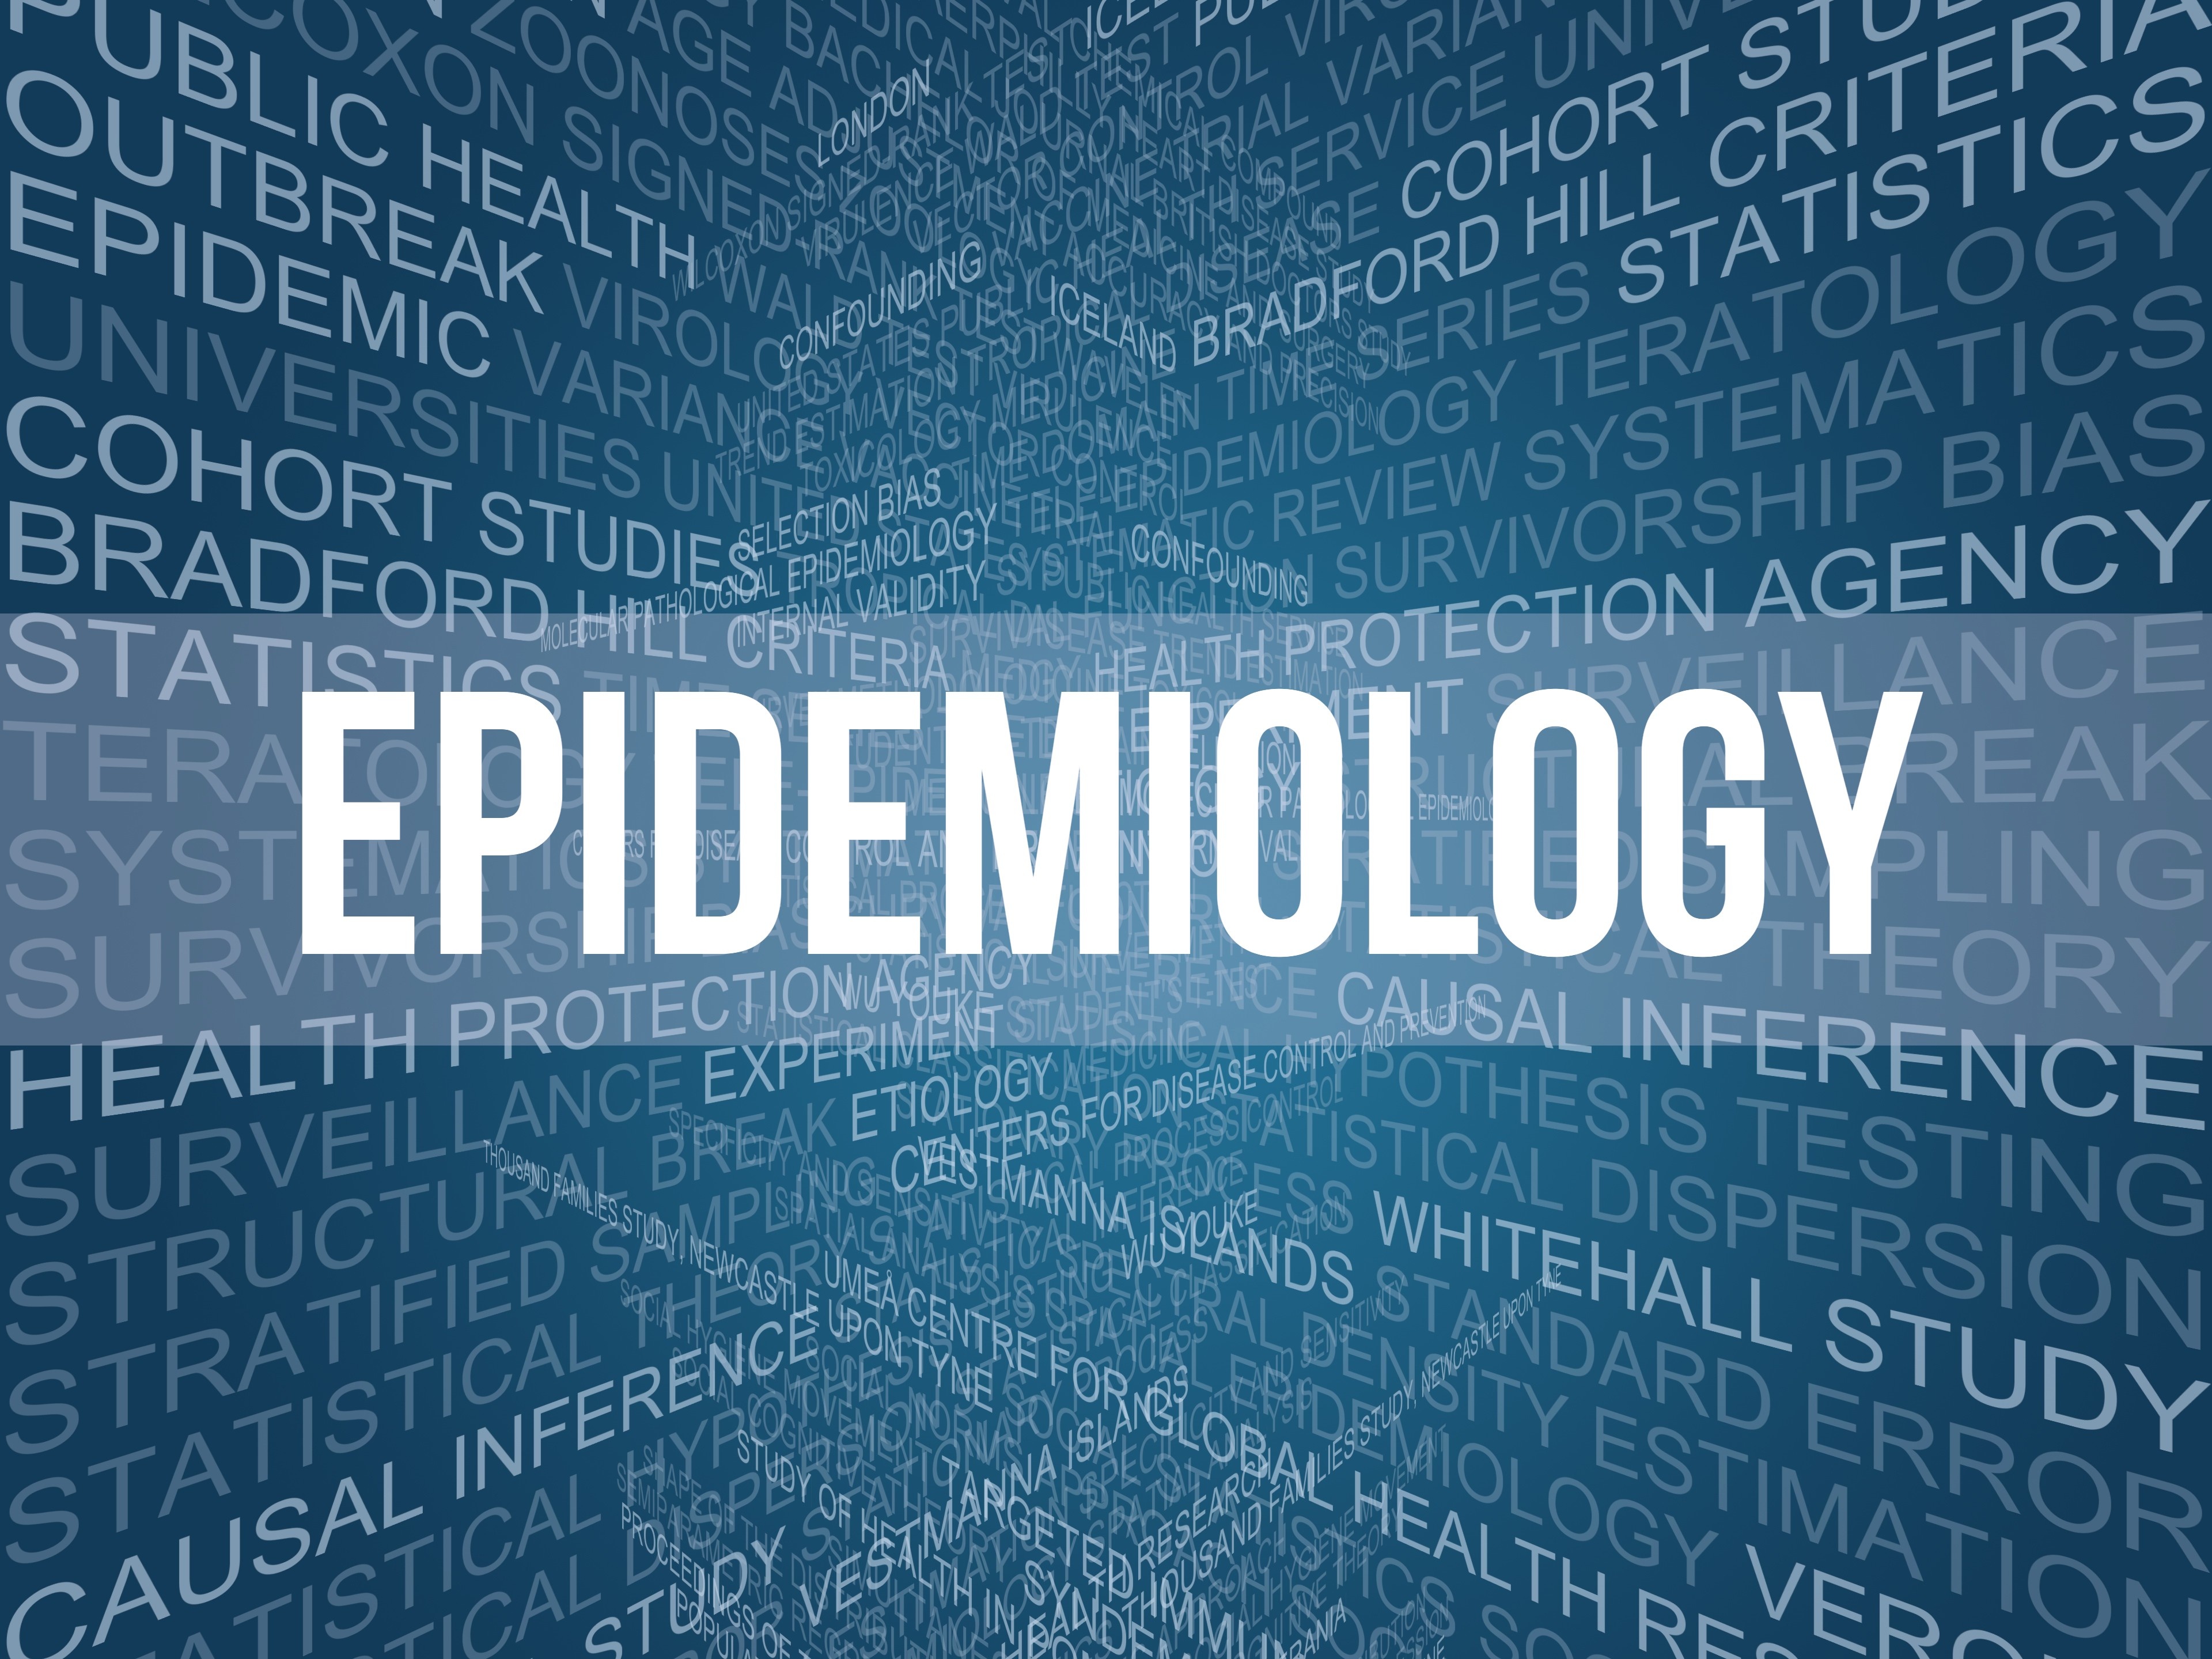 Tendinţele secolului 21 în epidemiologie și sănătate globală